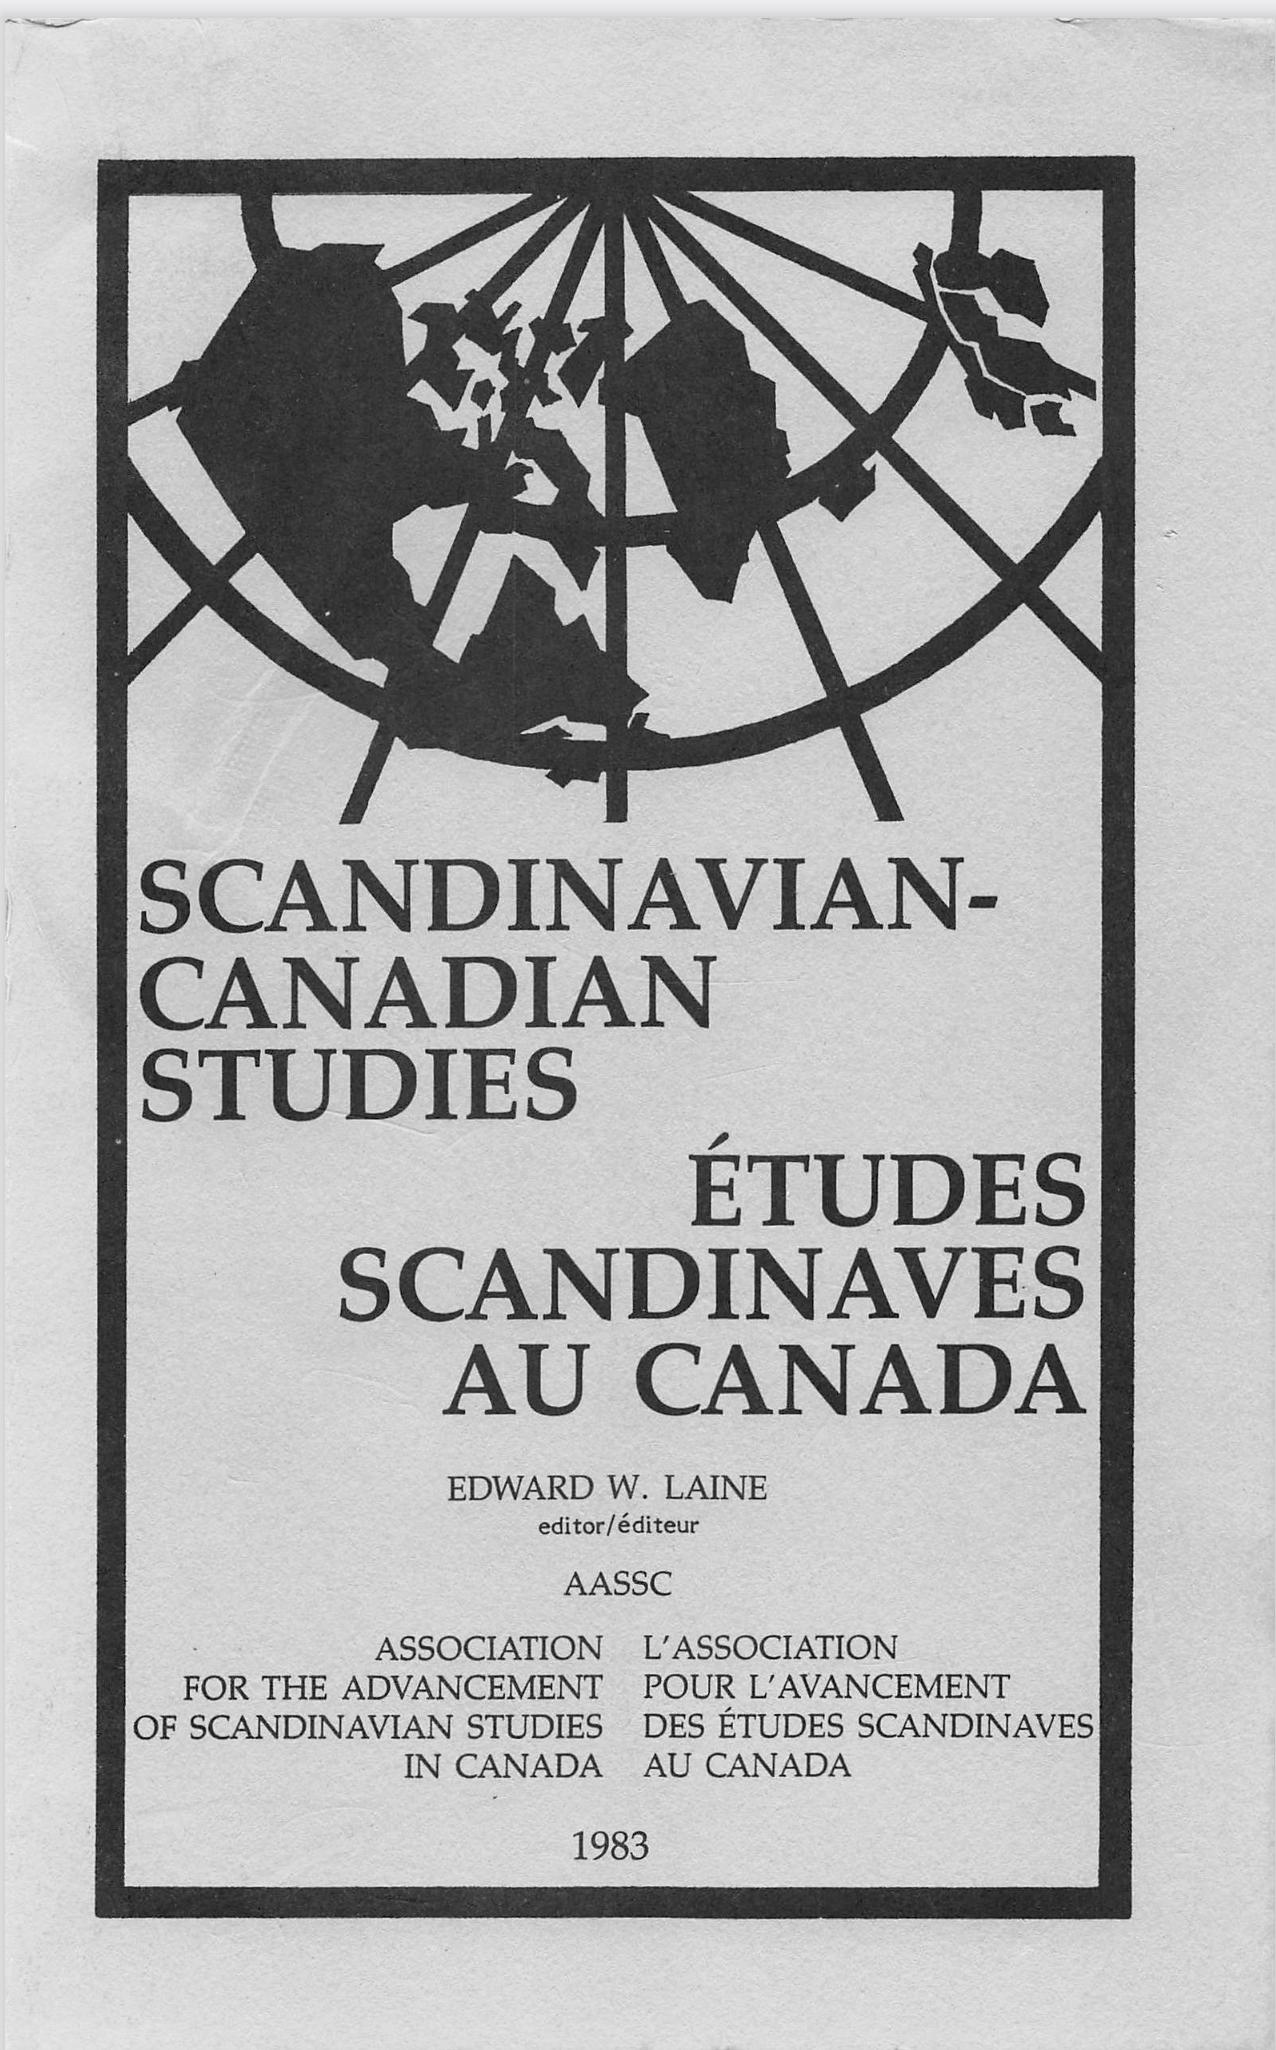 					View Vol. 1 (1983): SCANDINAVIAN-CANADIAN STUDIES/ÉTUDES SCANDINAVES AU CANADA Vol. 1 (1983)
				